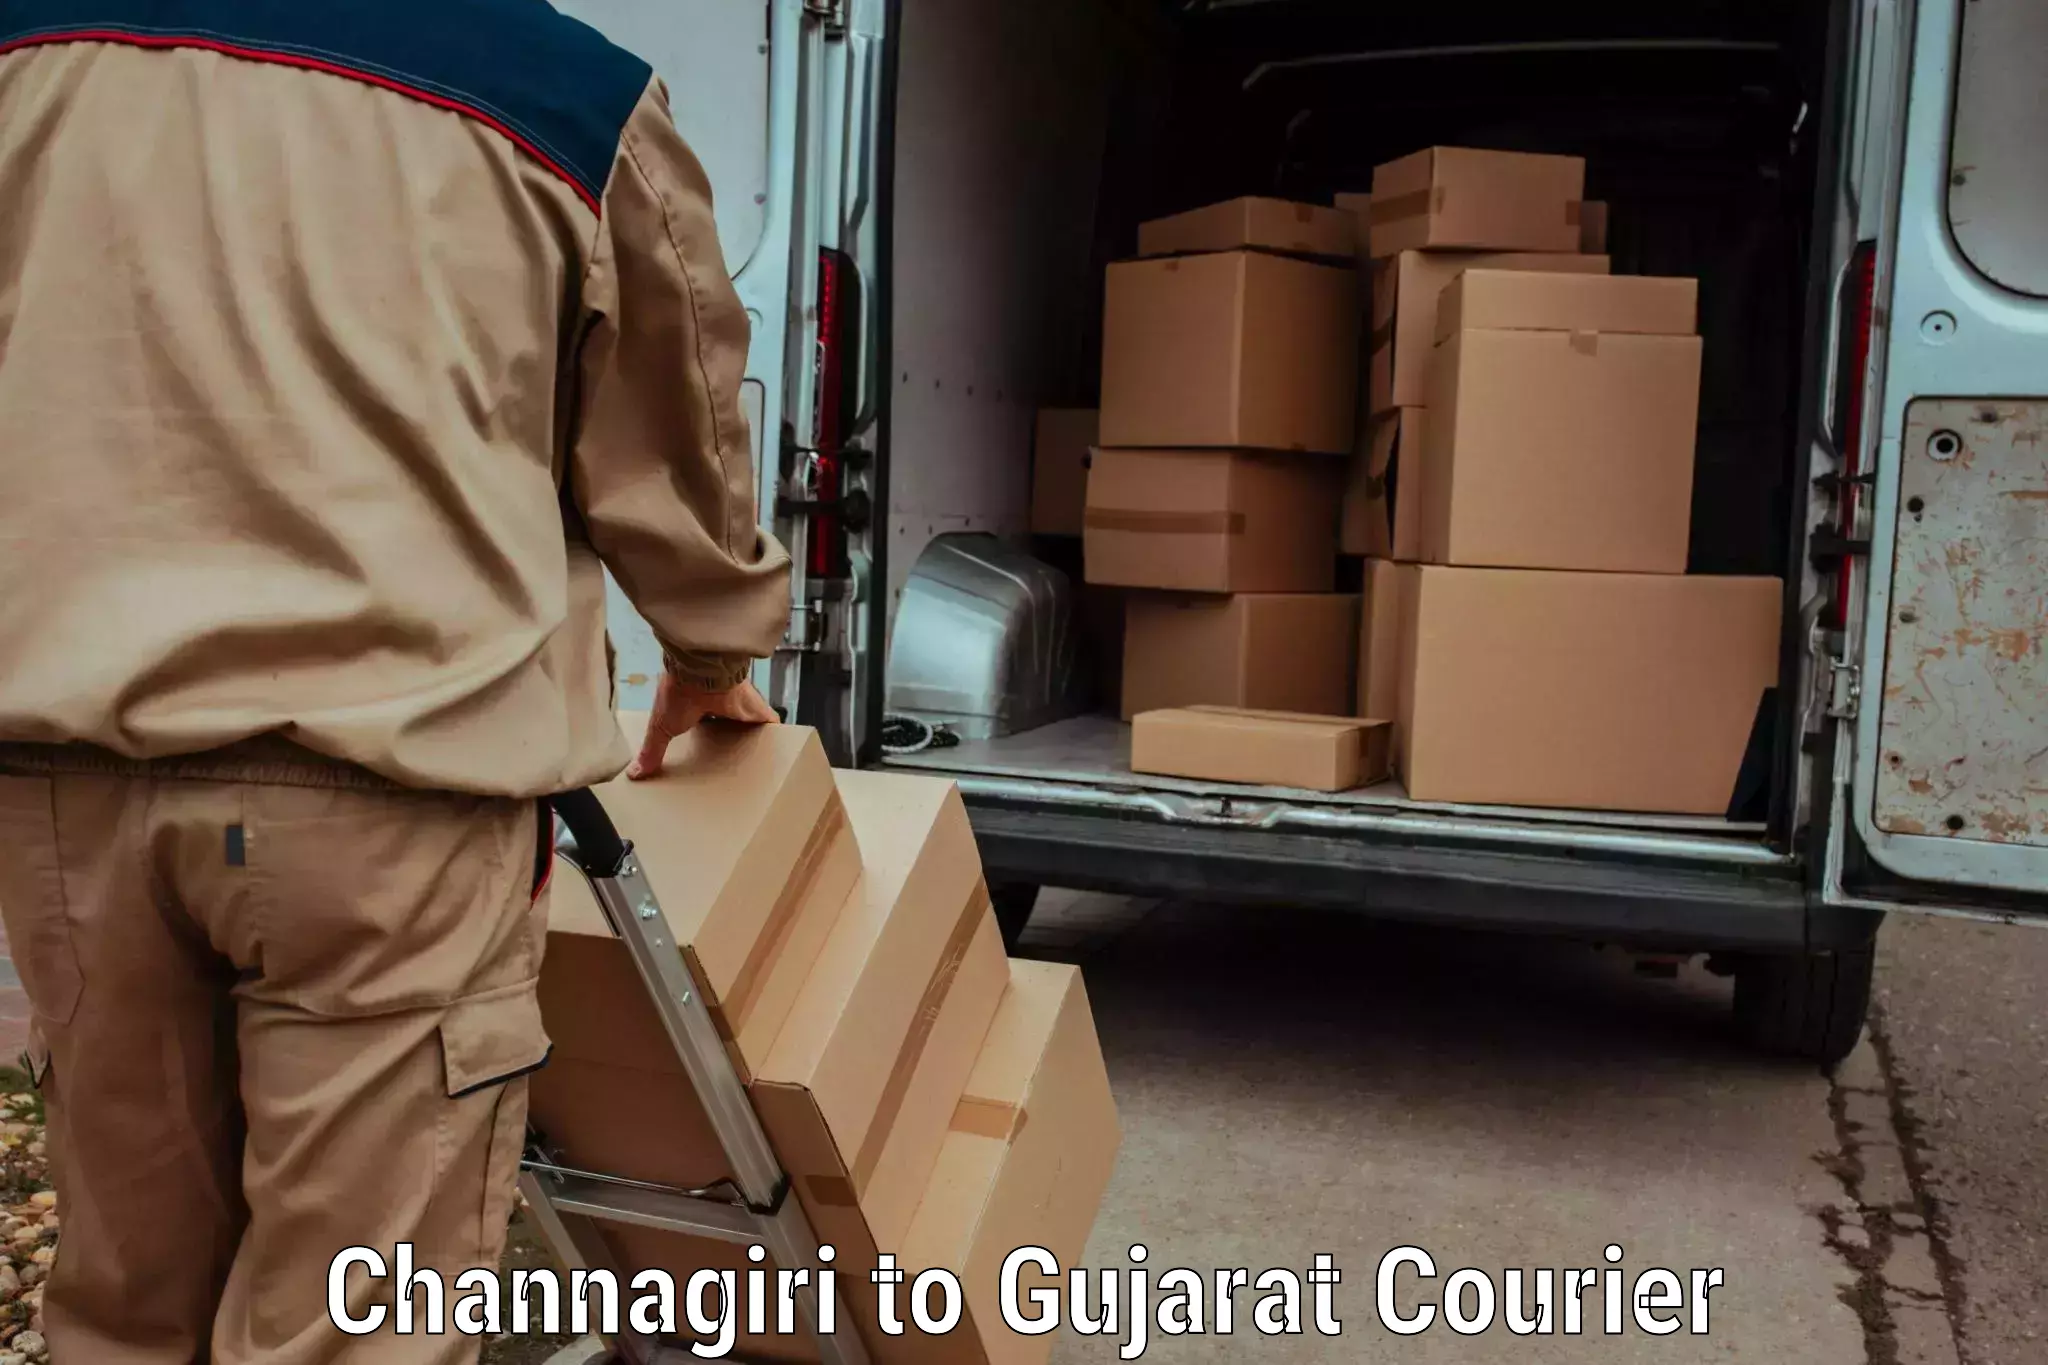 Efficient order fulfillment Channagiri to Rapar